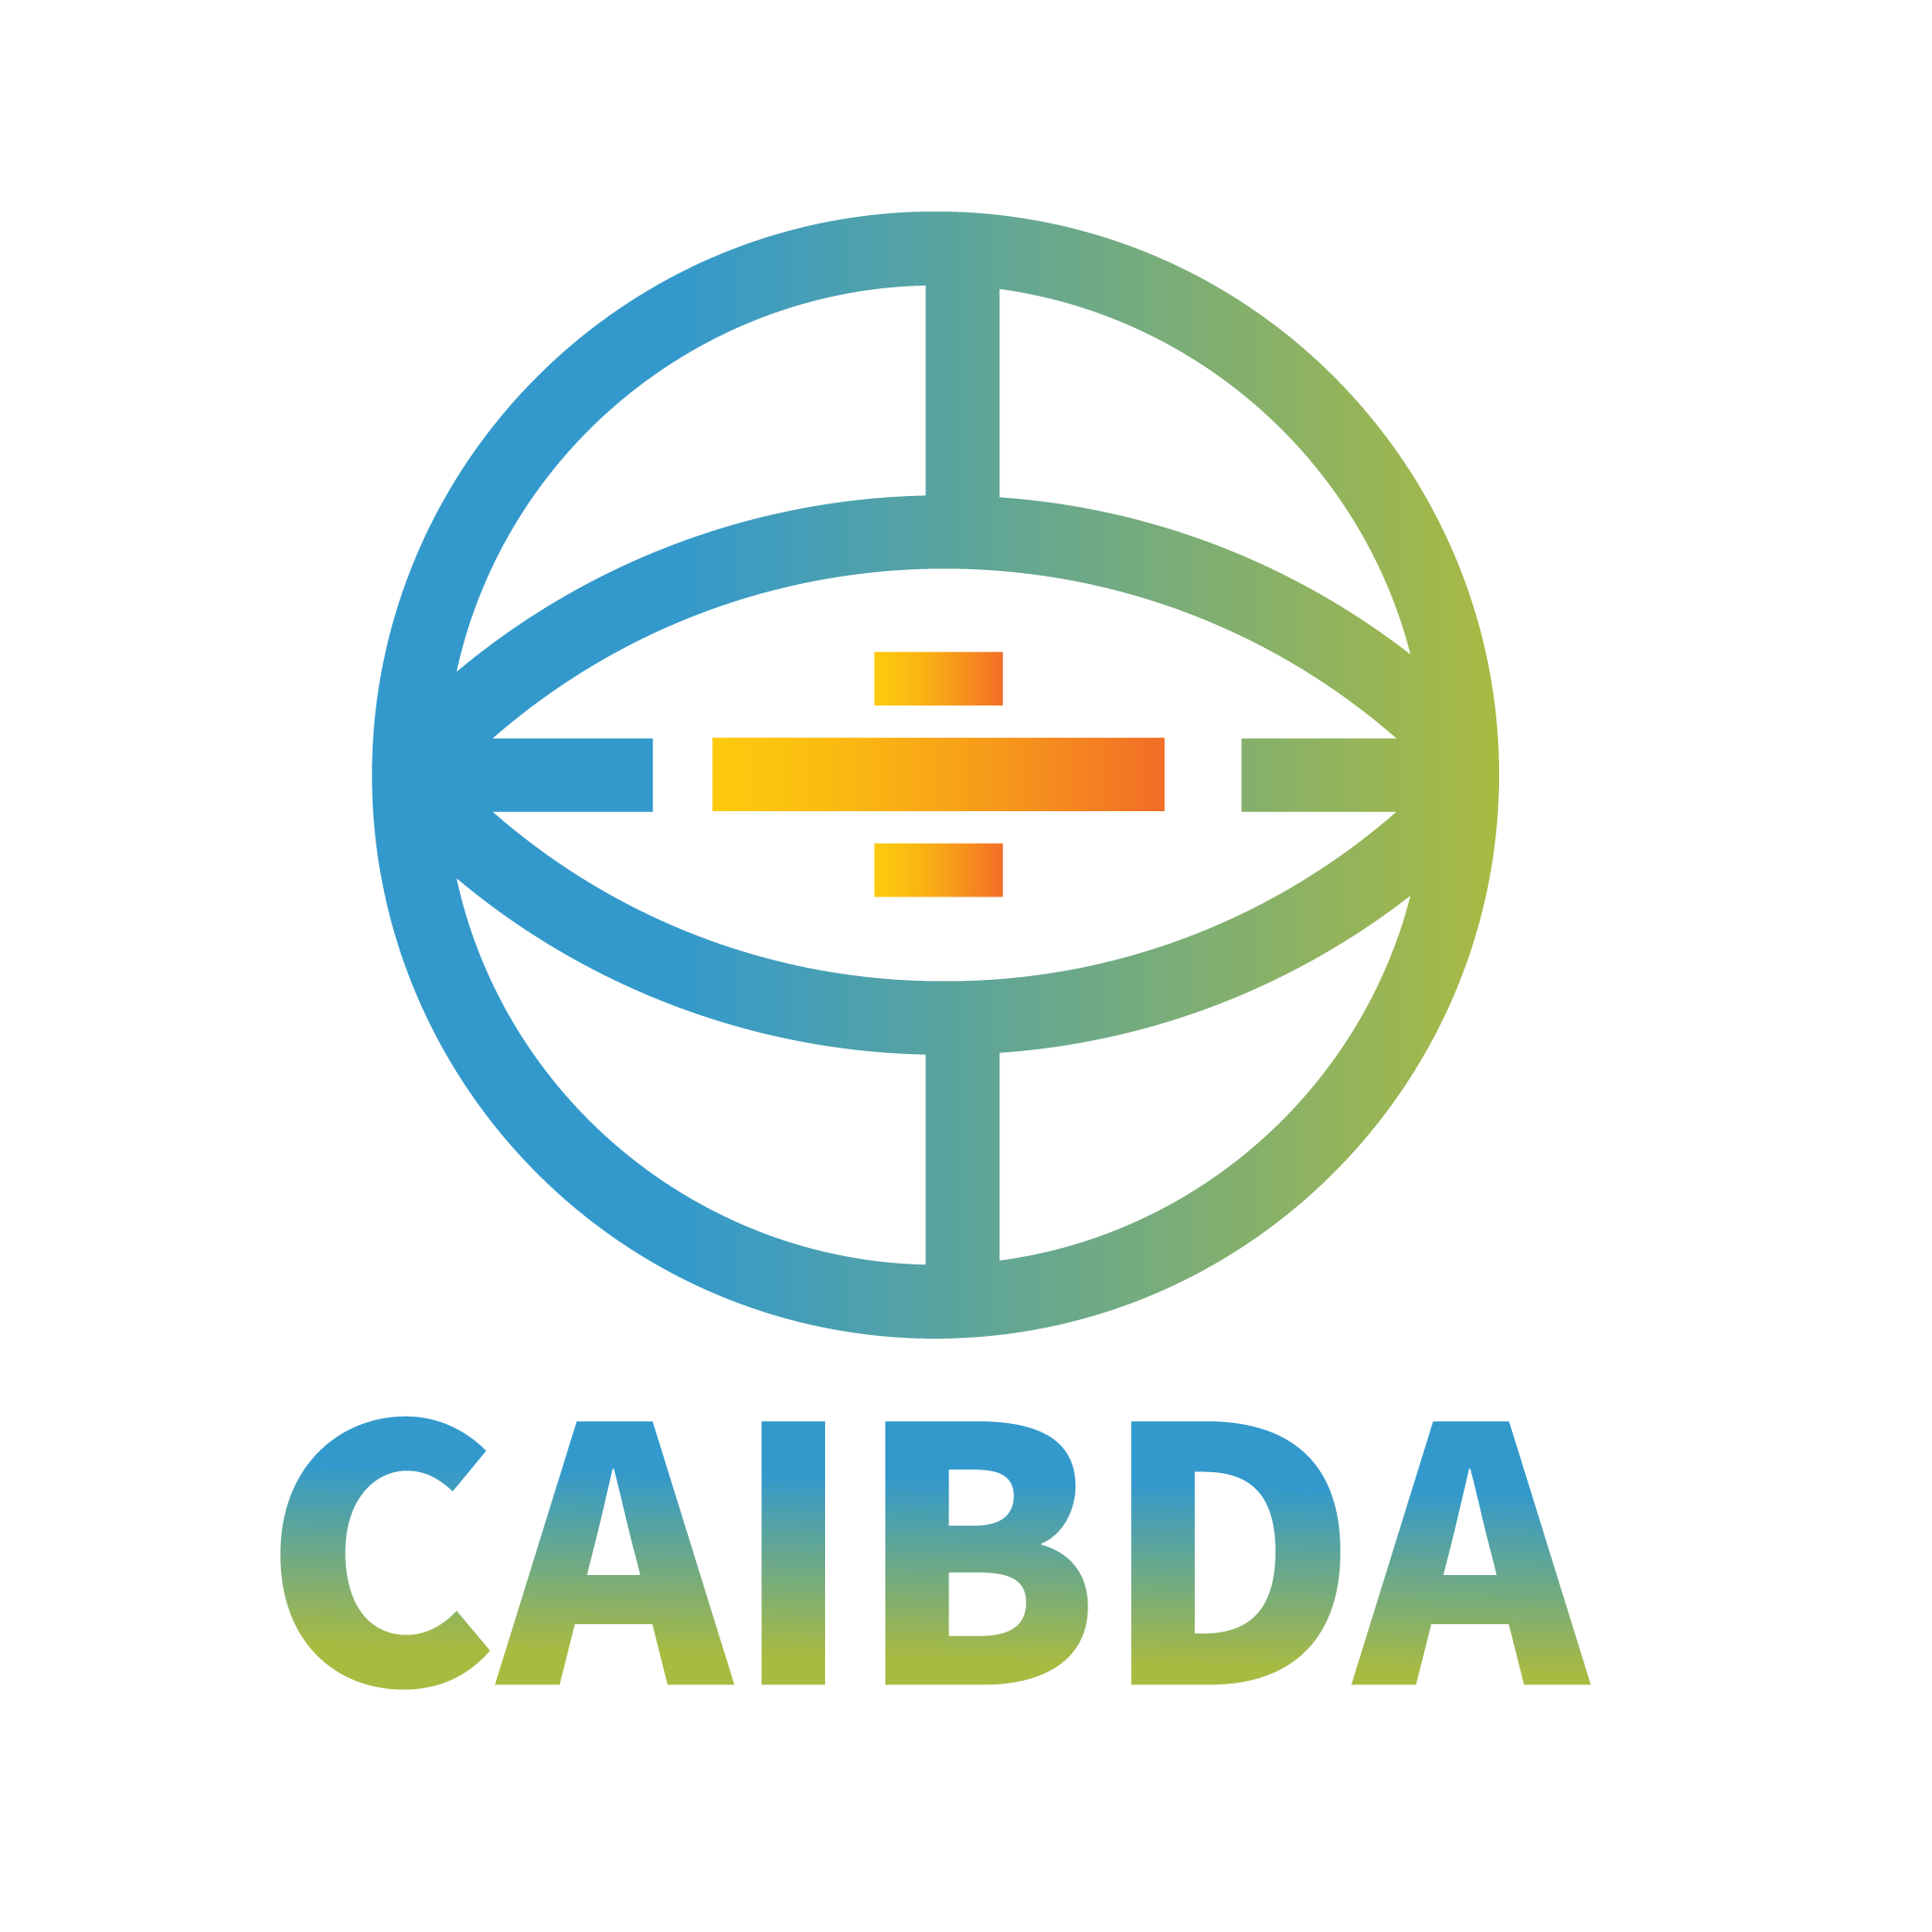 CAIBDA-logo.png